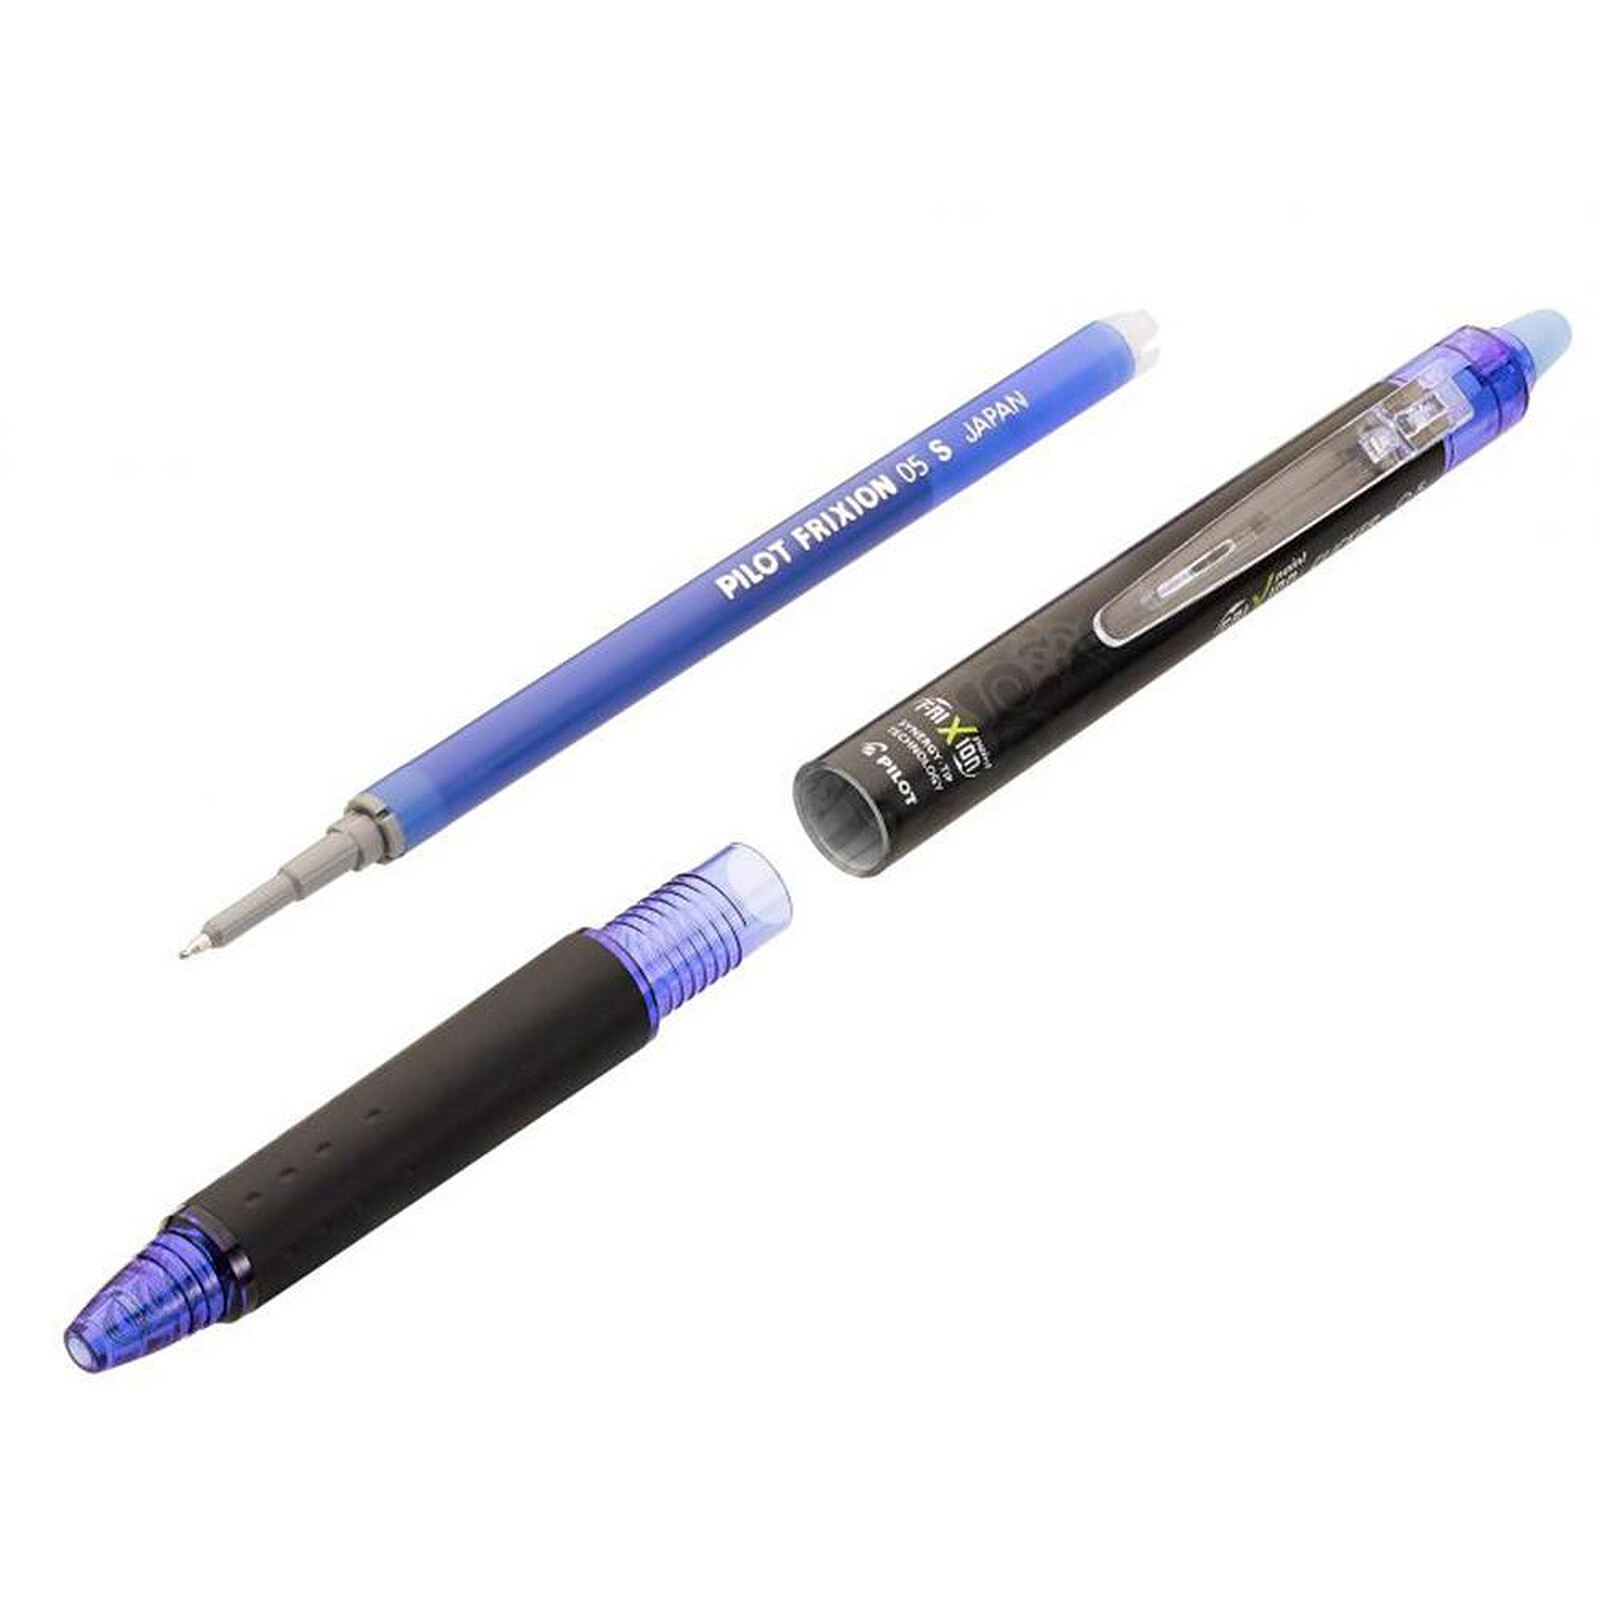 Recharge pour stylo effaçable Pilot FriXion - bleu - Pochette de 3